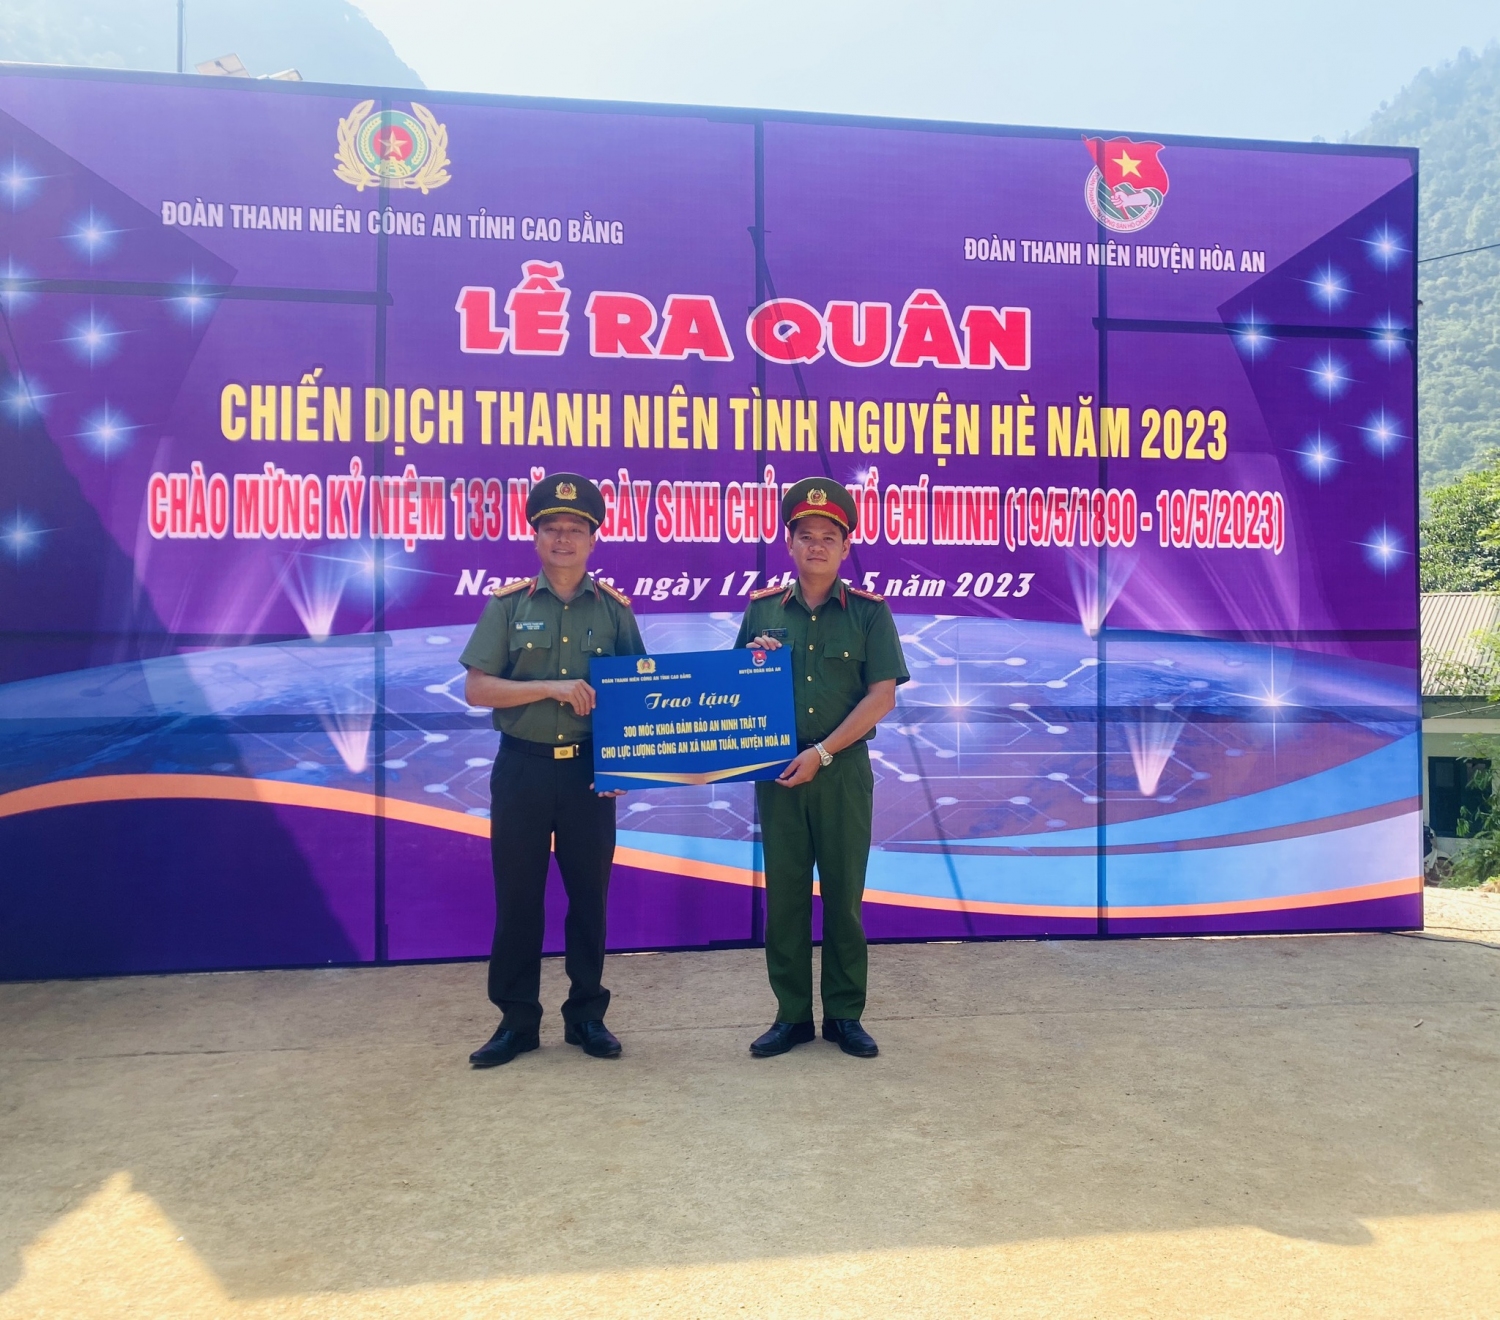 Chương trình đã trao tặng 300 móc khoá đảm bảo an ninh trật tự cho Công an xã Nam Tuấn, huyện Hòa An